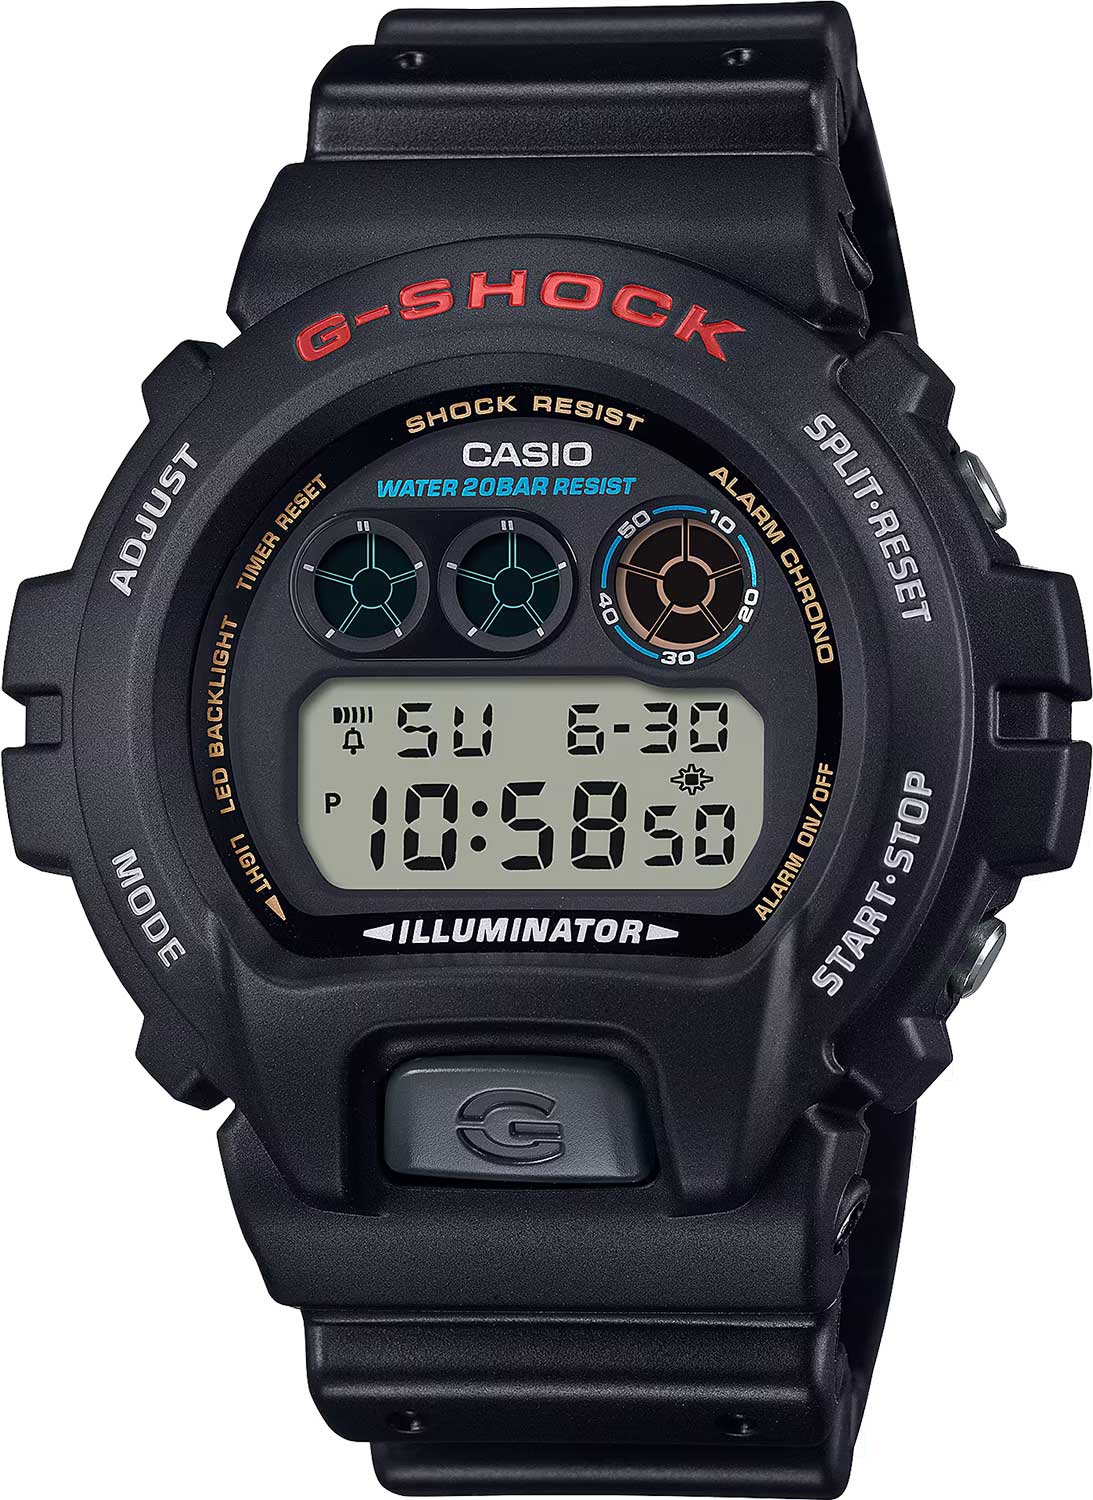    Casio G-SHOCK DW-6900U-1  